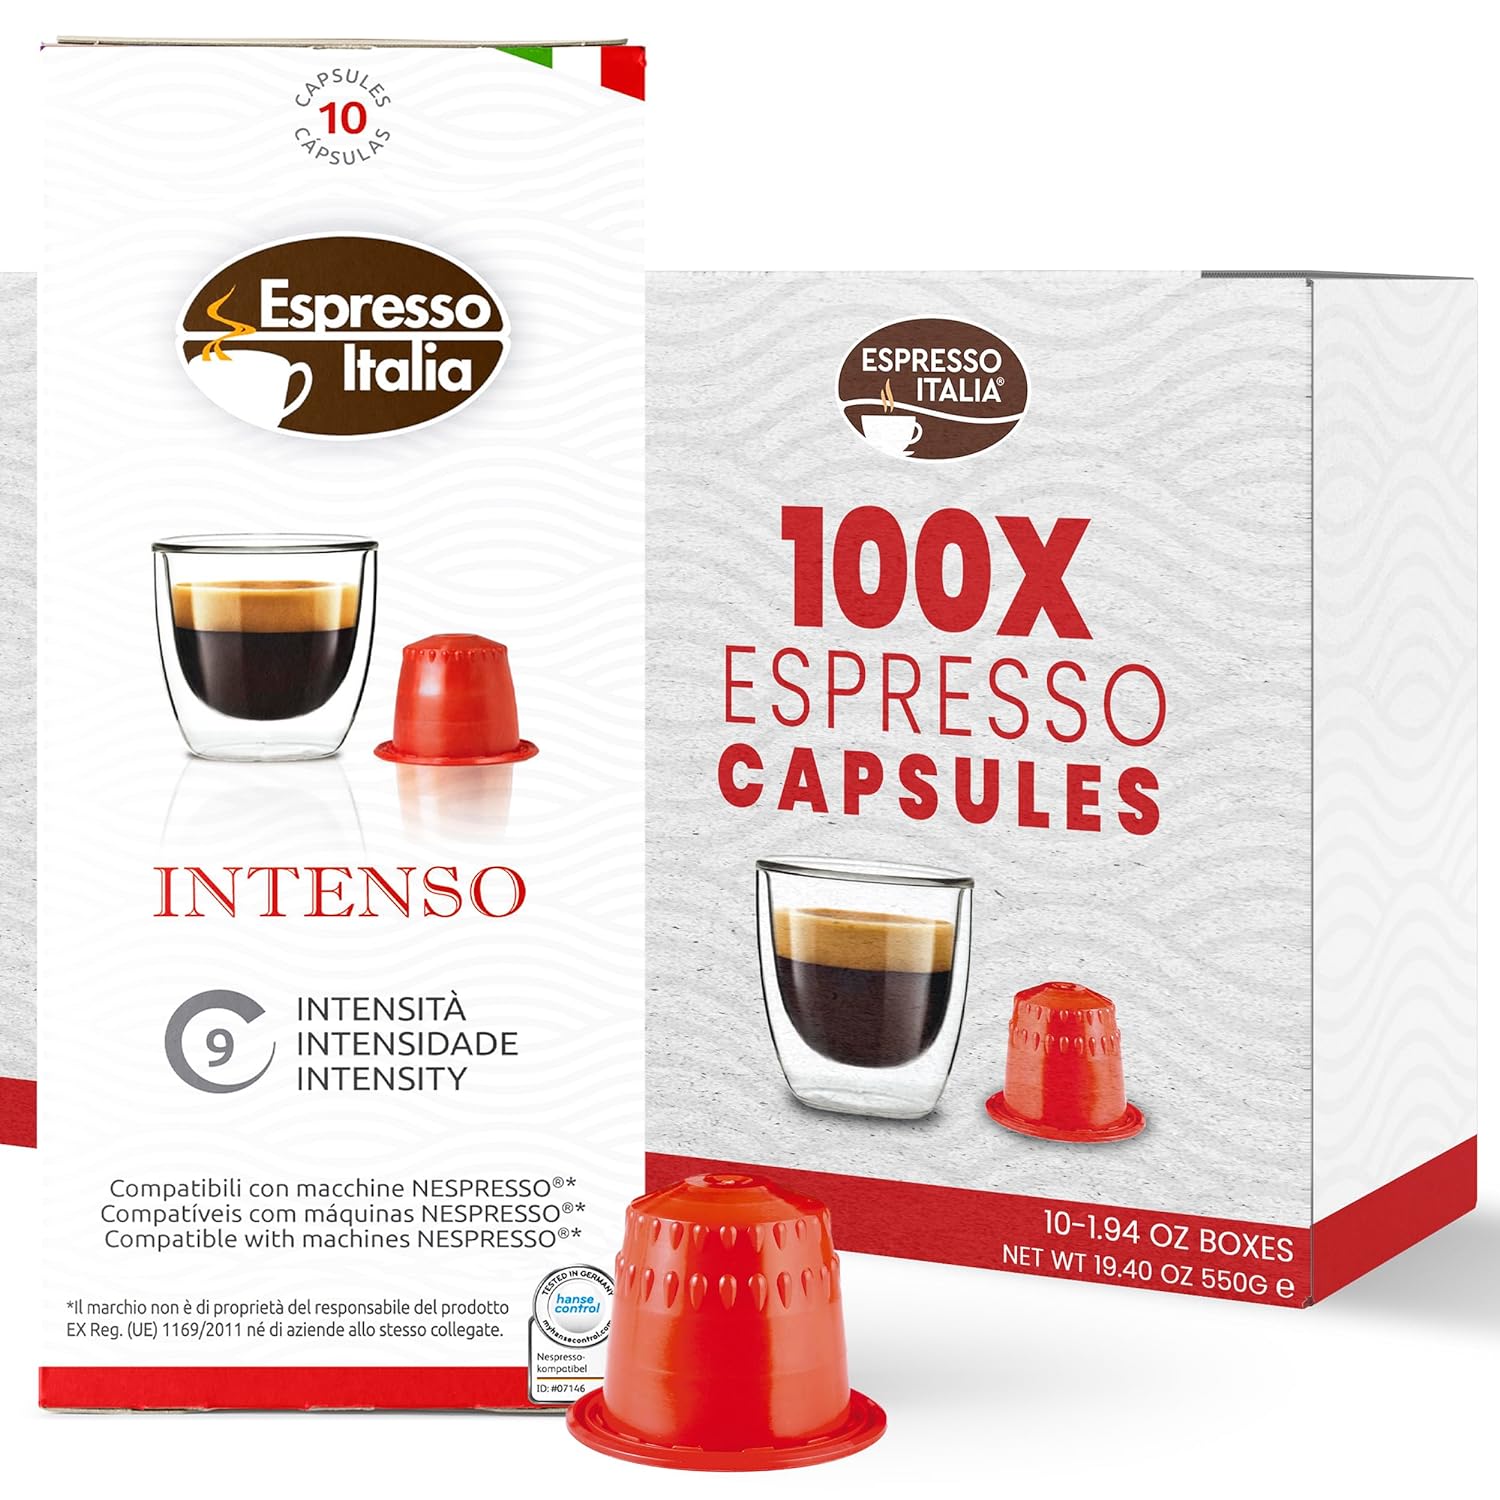 ESPRESSO ITALIA Capsules Compatible with espresso Machines, 100 Count - INTENSO, Italian Coffee Pods Expresso Intensity 9